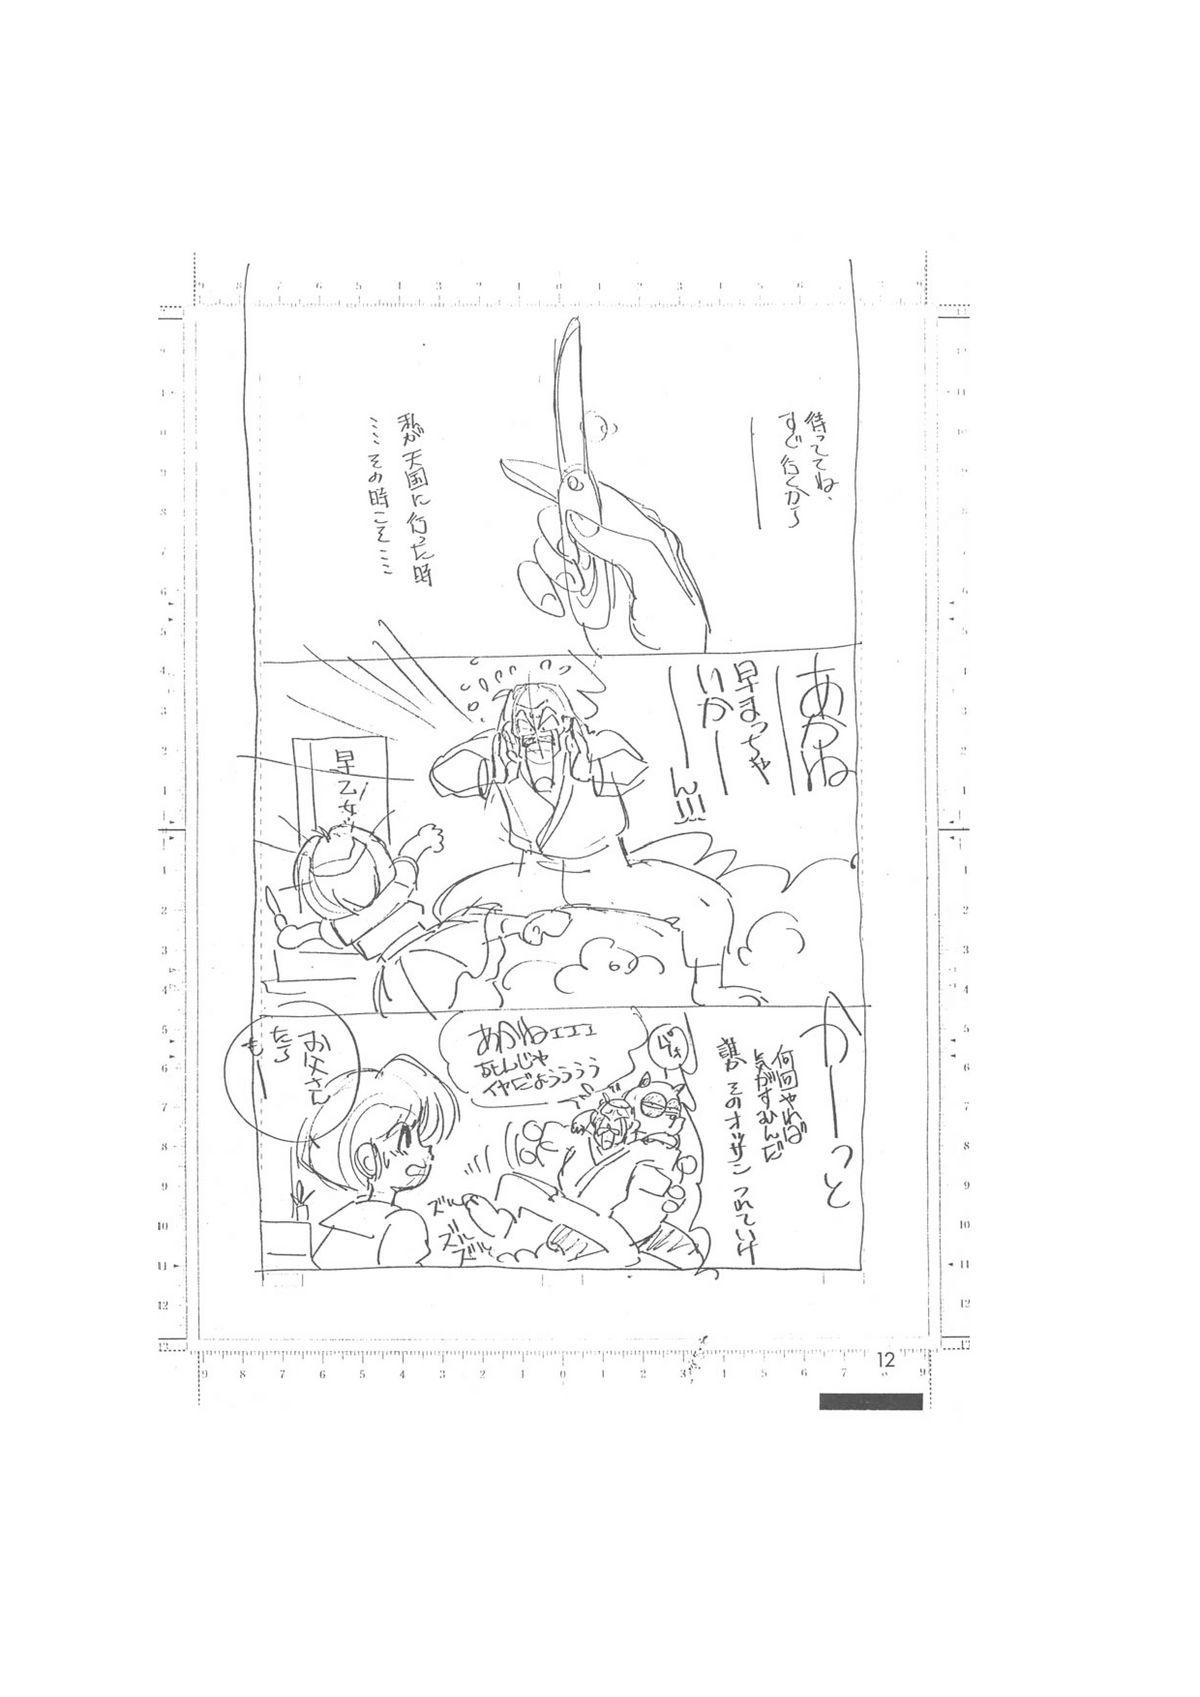 Hymen メイキング・オブ・『真・最悪的悲劇』 - A Ranma Doujin Sketch by Dark Zone - Ranma 12 Rough Porn - Page 12